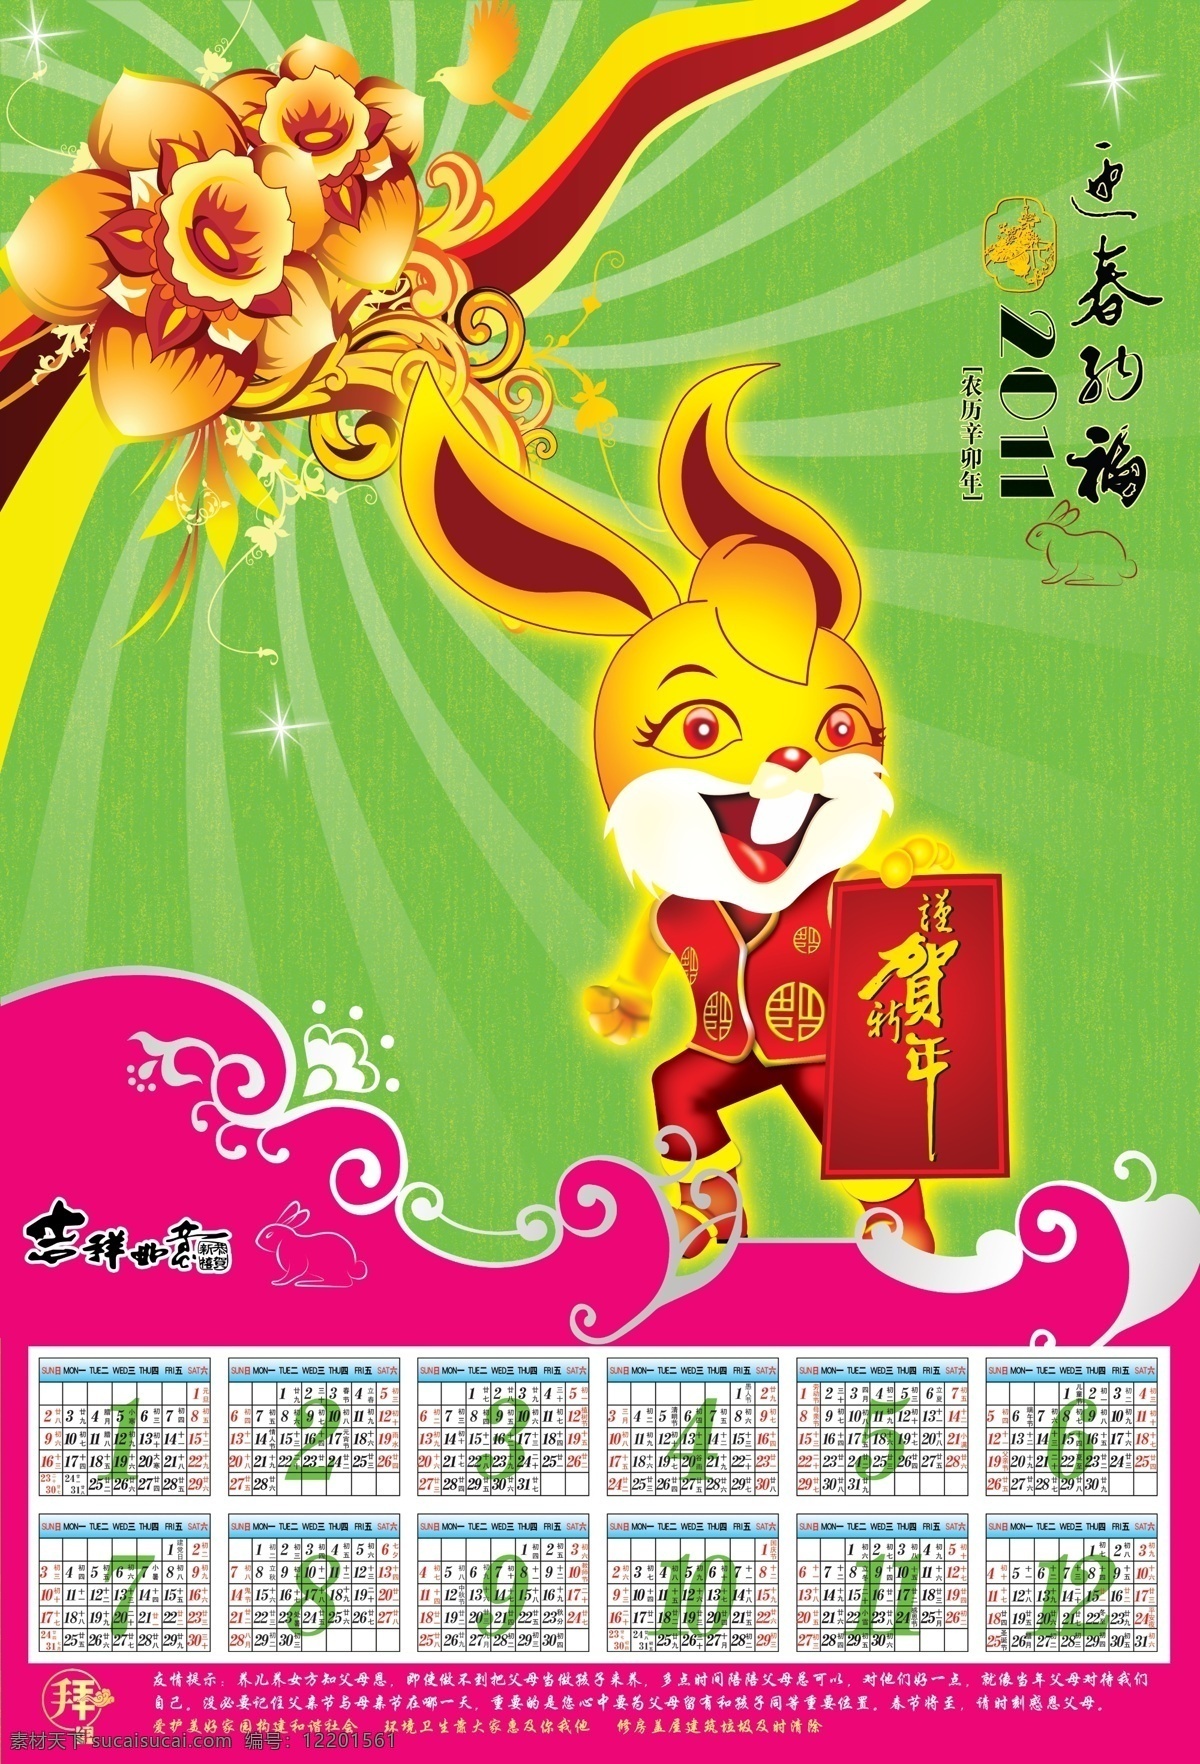 2011 年 日历 挂历 模板 春节 新年 新年素材 兔子 兔年 新年快乐 年历 日历设计 日历表 光 星光 花朵 底纹 挂历模板 红色